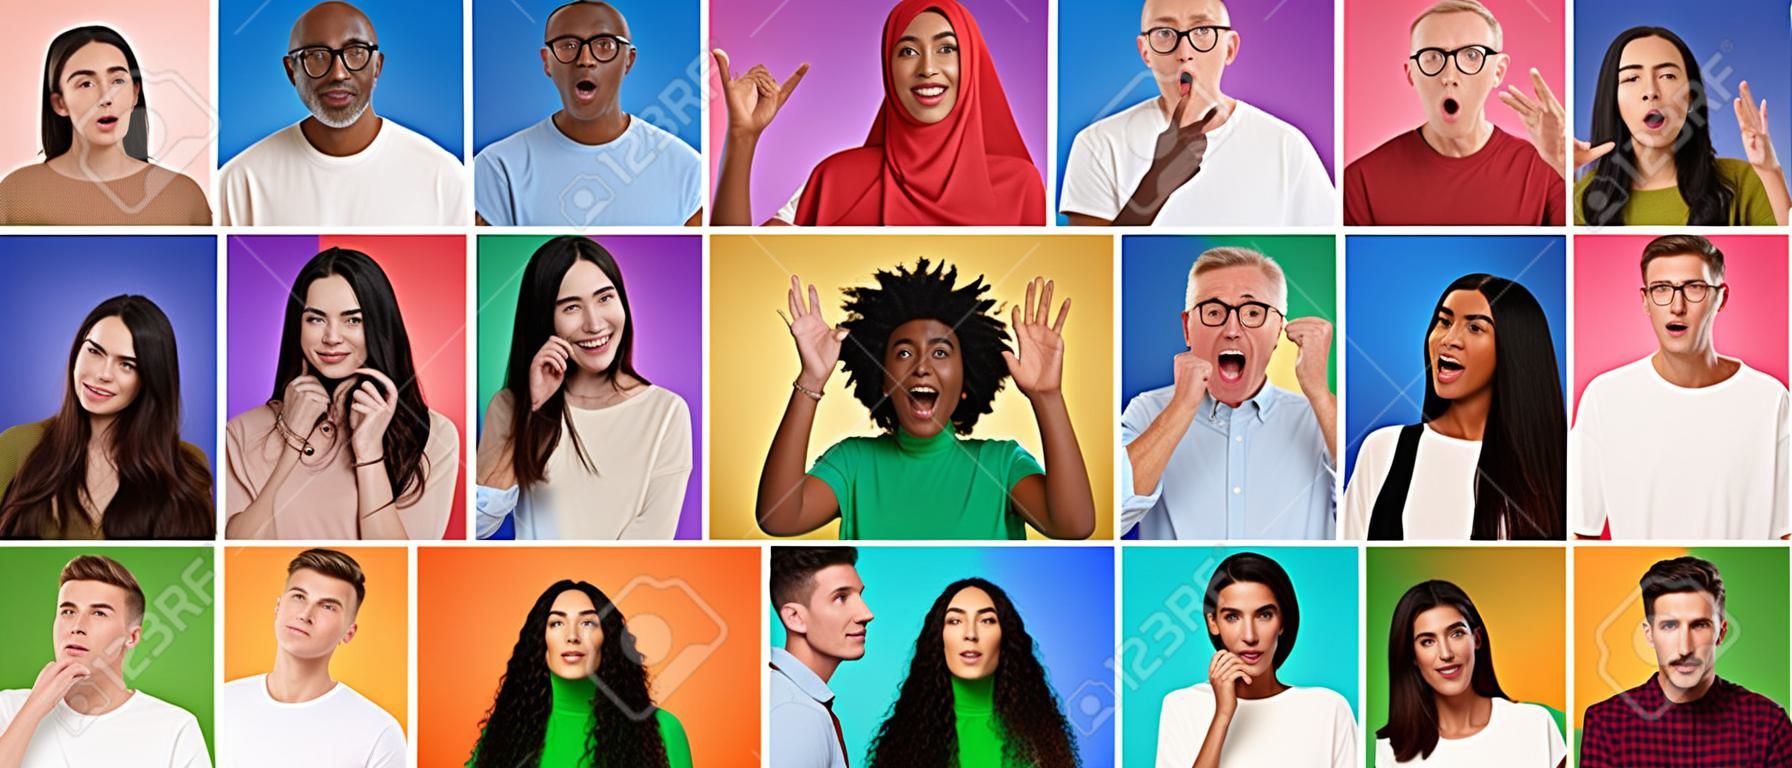 Menschen unterschiedlichen Alters und unterschiedlicher ethnischer Zugehörigkeit drücken vor farbenfrohen Hintergründen unterschiedliche Gefühle aus